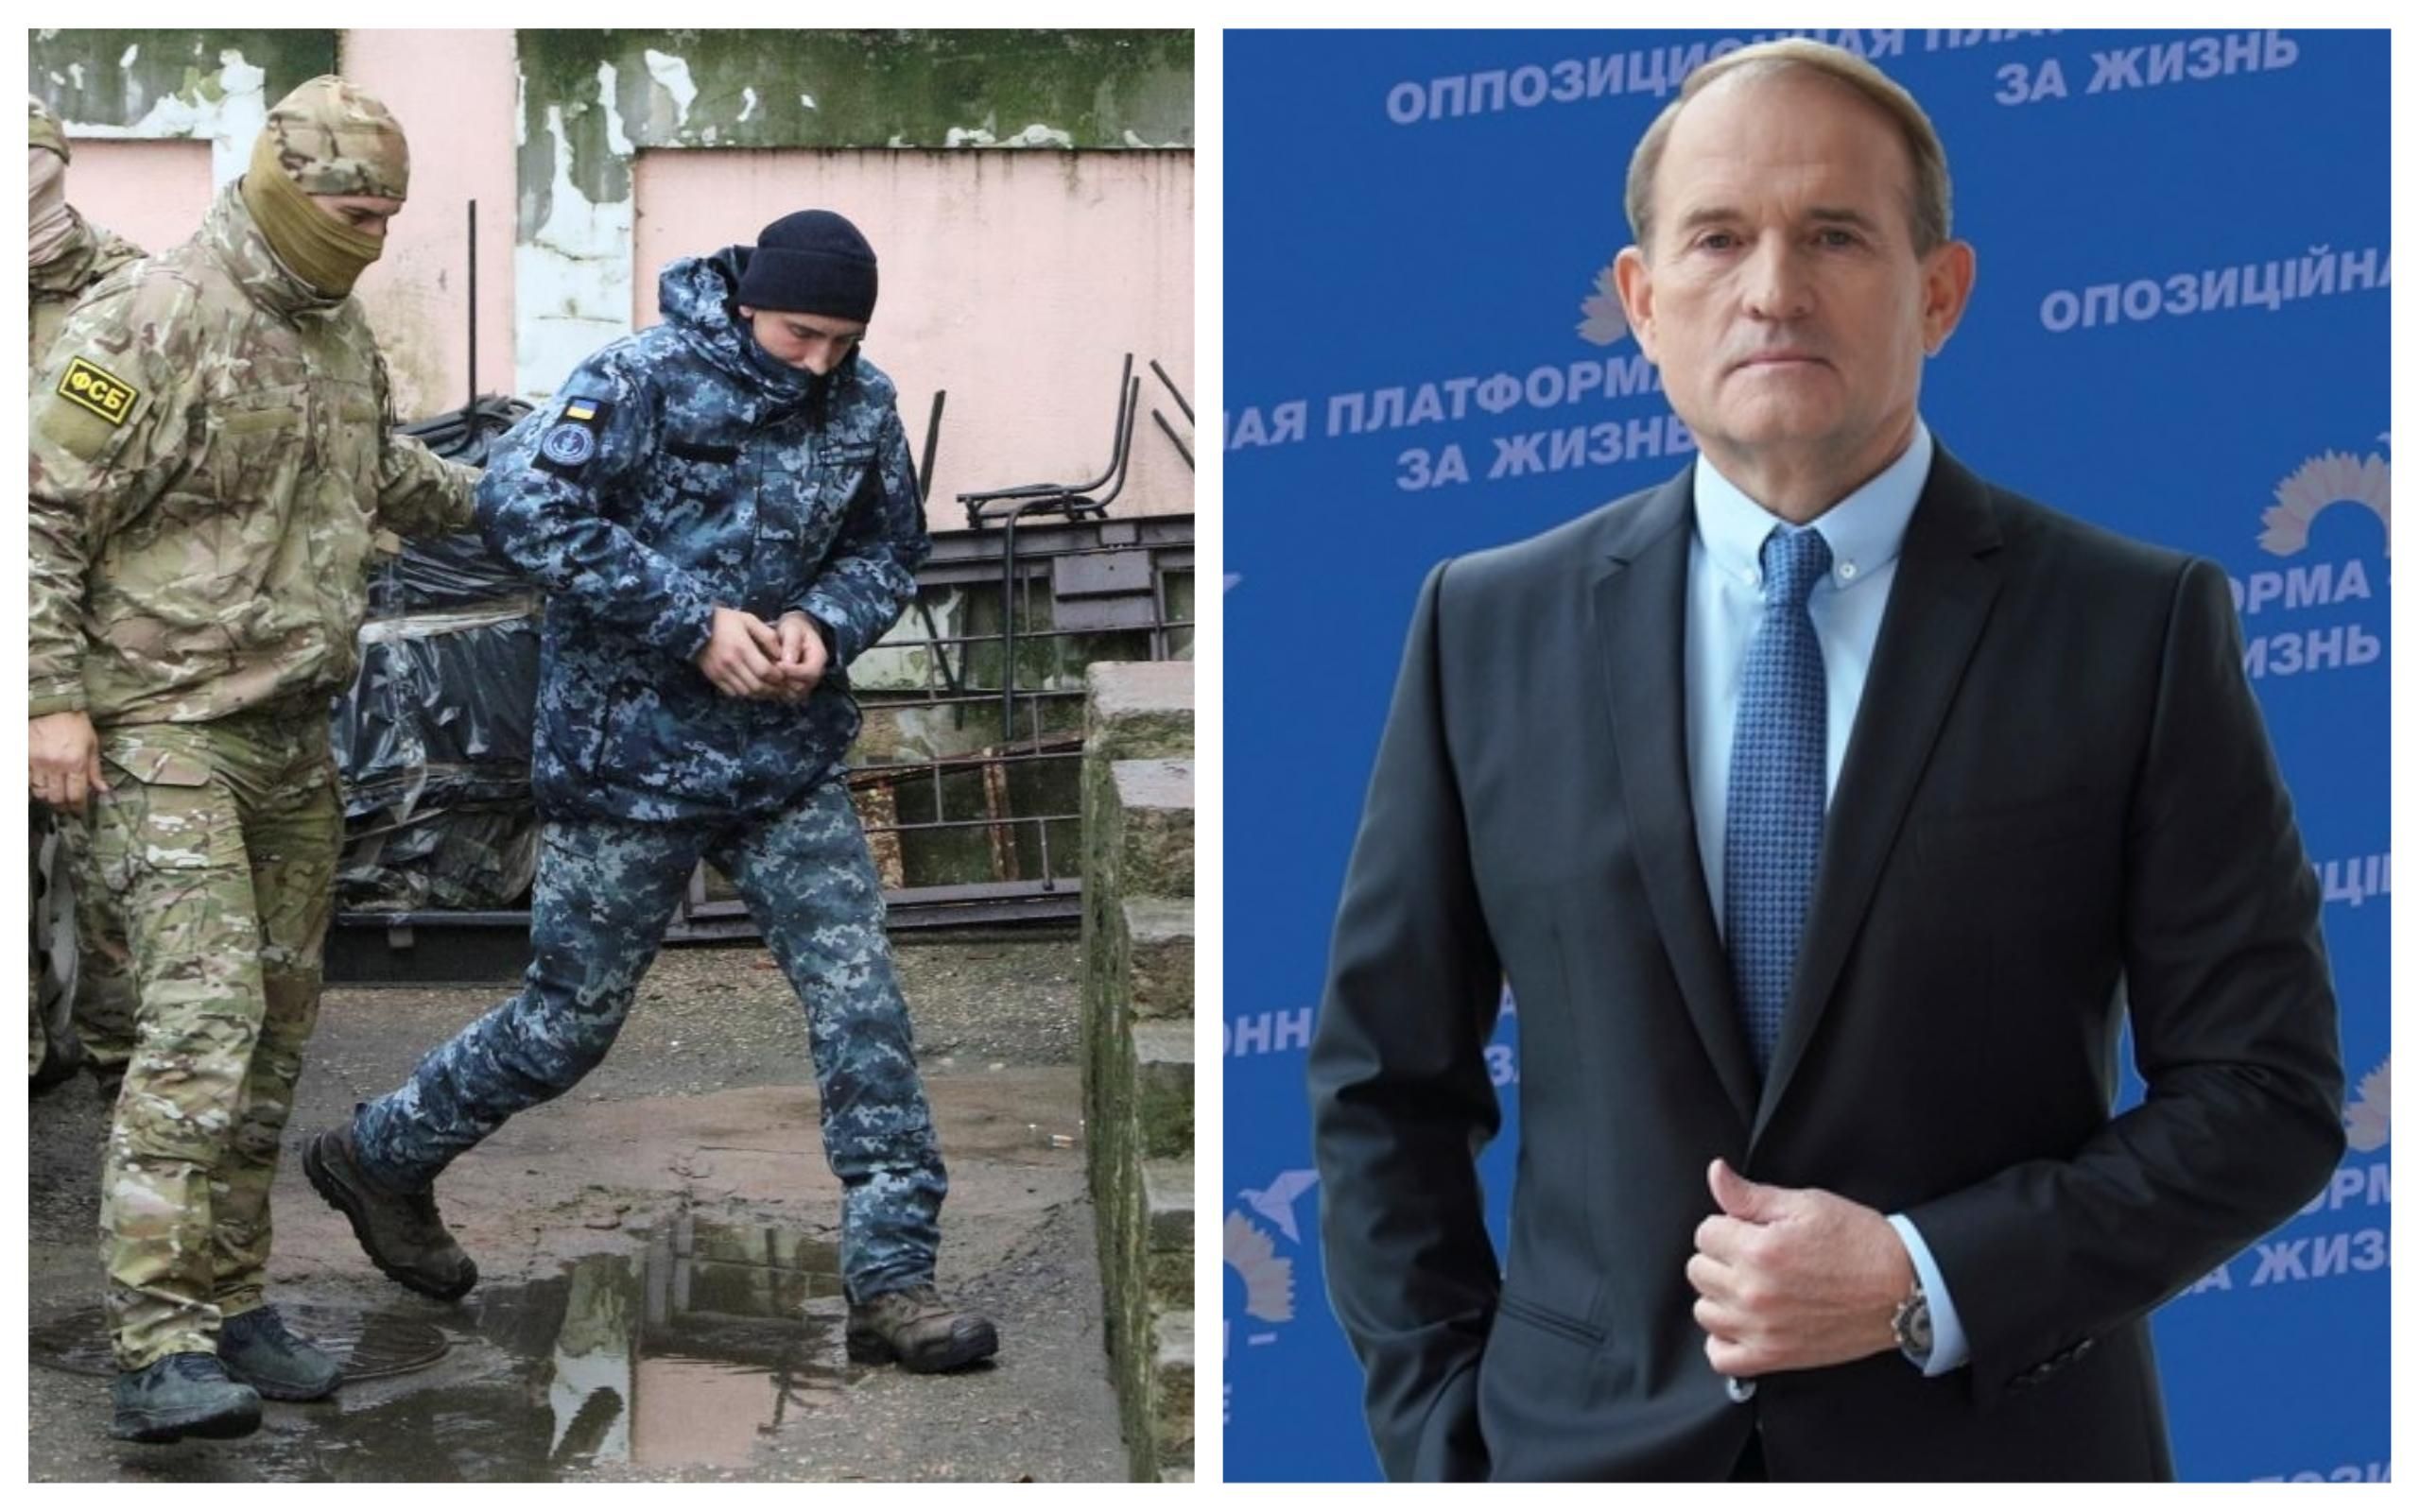 Россия может использовать пленных моряков для вмешательства в выборы в Раду, – адвокат